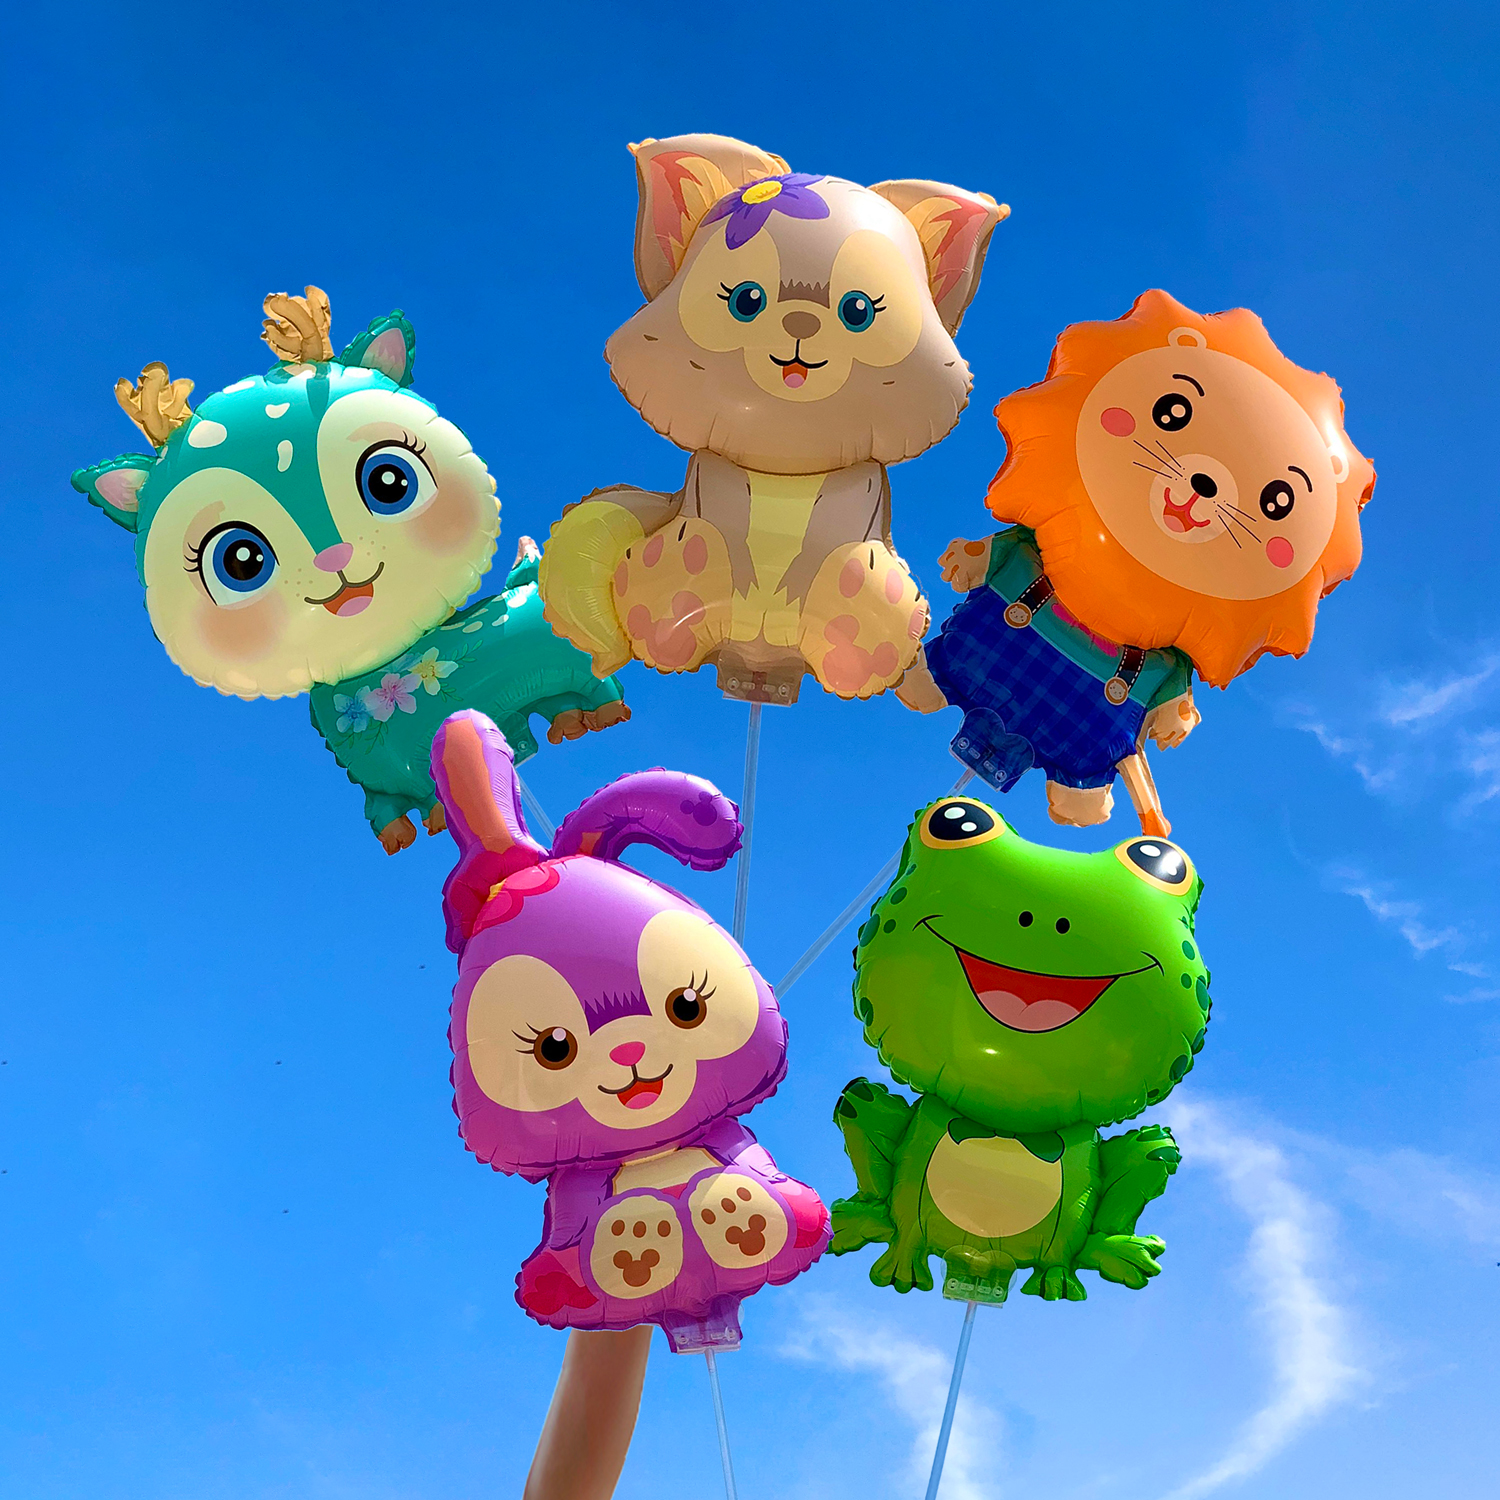 网红可爱卡通青蛙气球夹片手持棒儿童无毒手拿玩具幼儿园活动摆摊